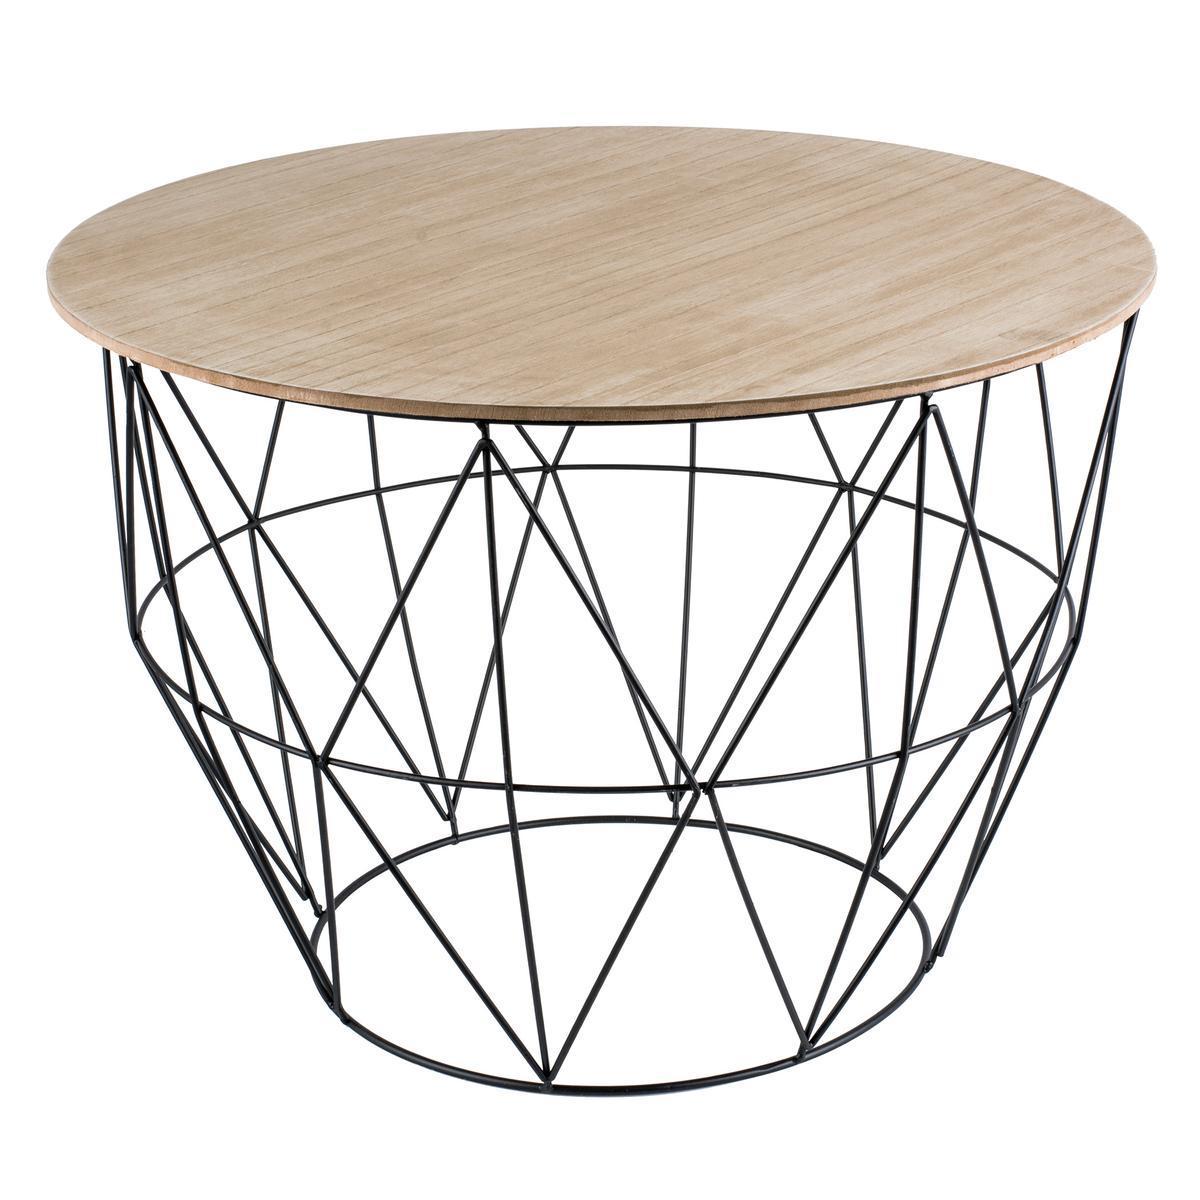 Table panier - MDF, métal et paulownia - 55 x 55 x H 41 cm - Noir et bois